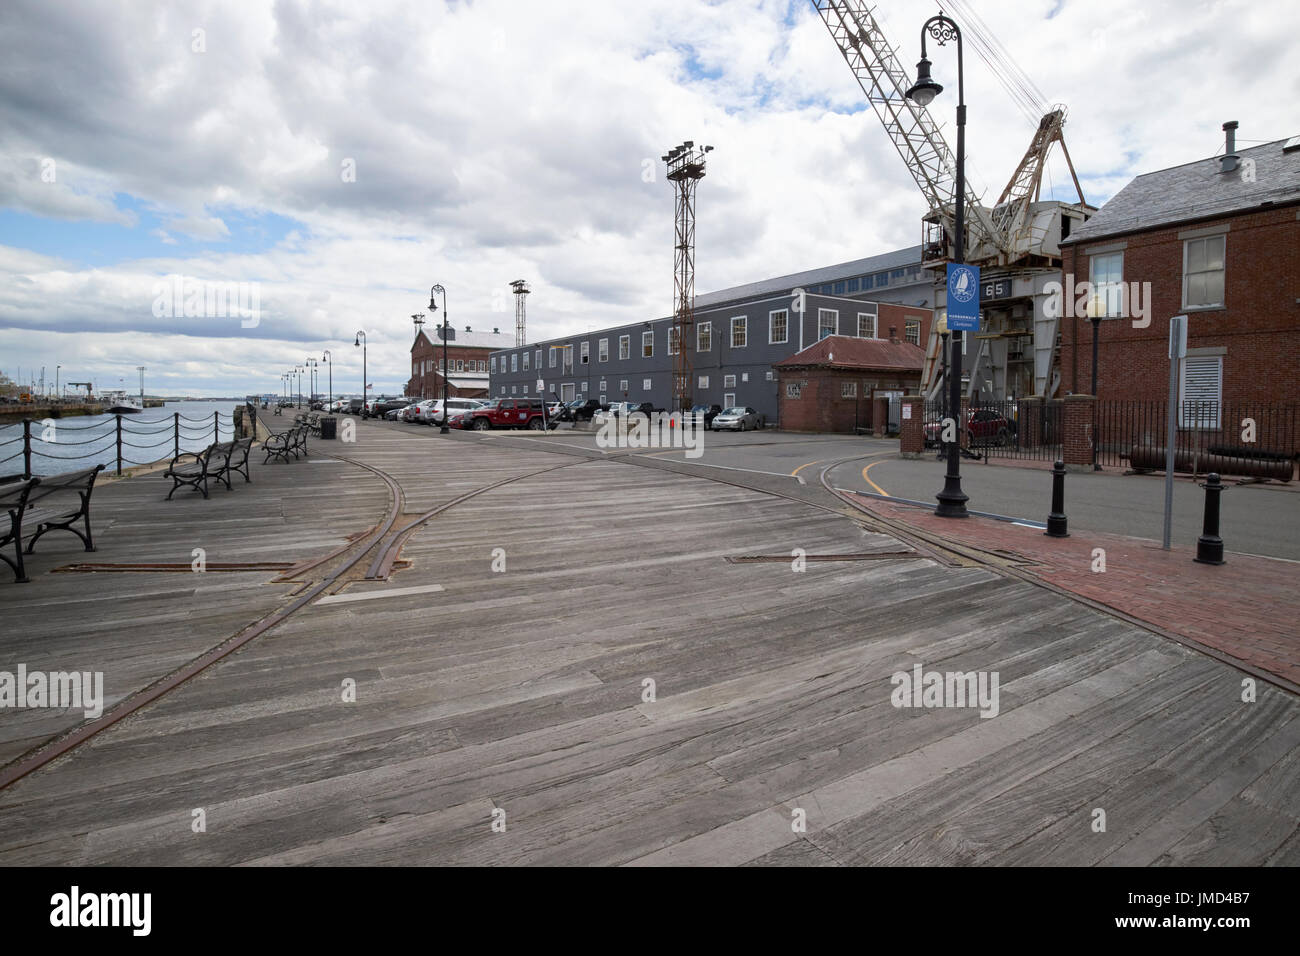 Pont en bois et de loisirs harborwalk quay avec de vieux rails de transport Charlestown Navy Yard Boston USA Banque D'Images